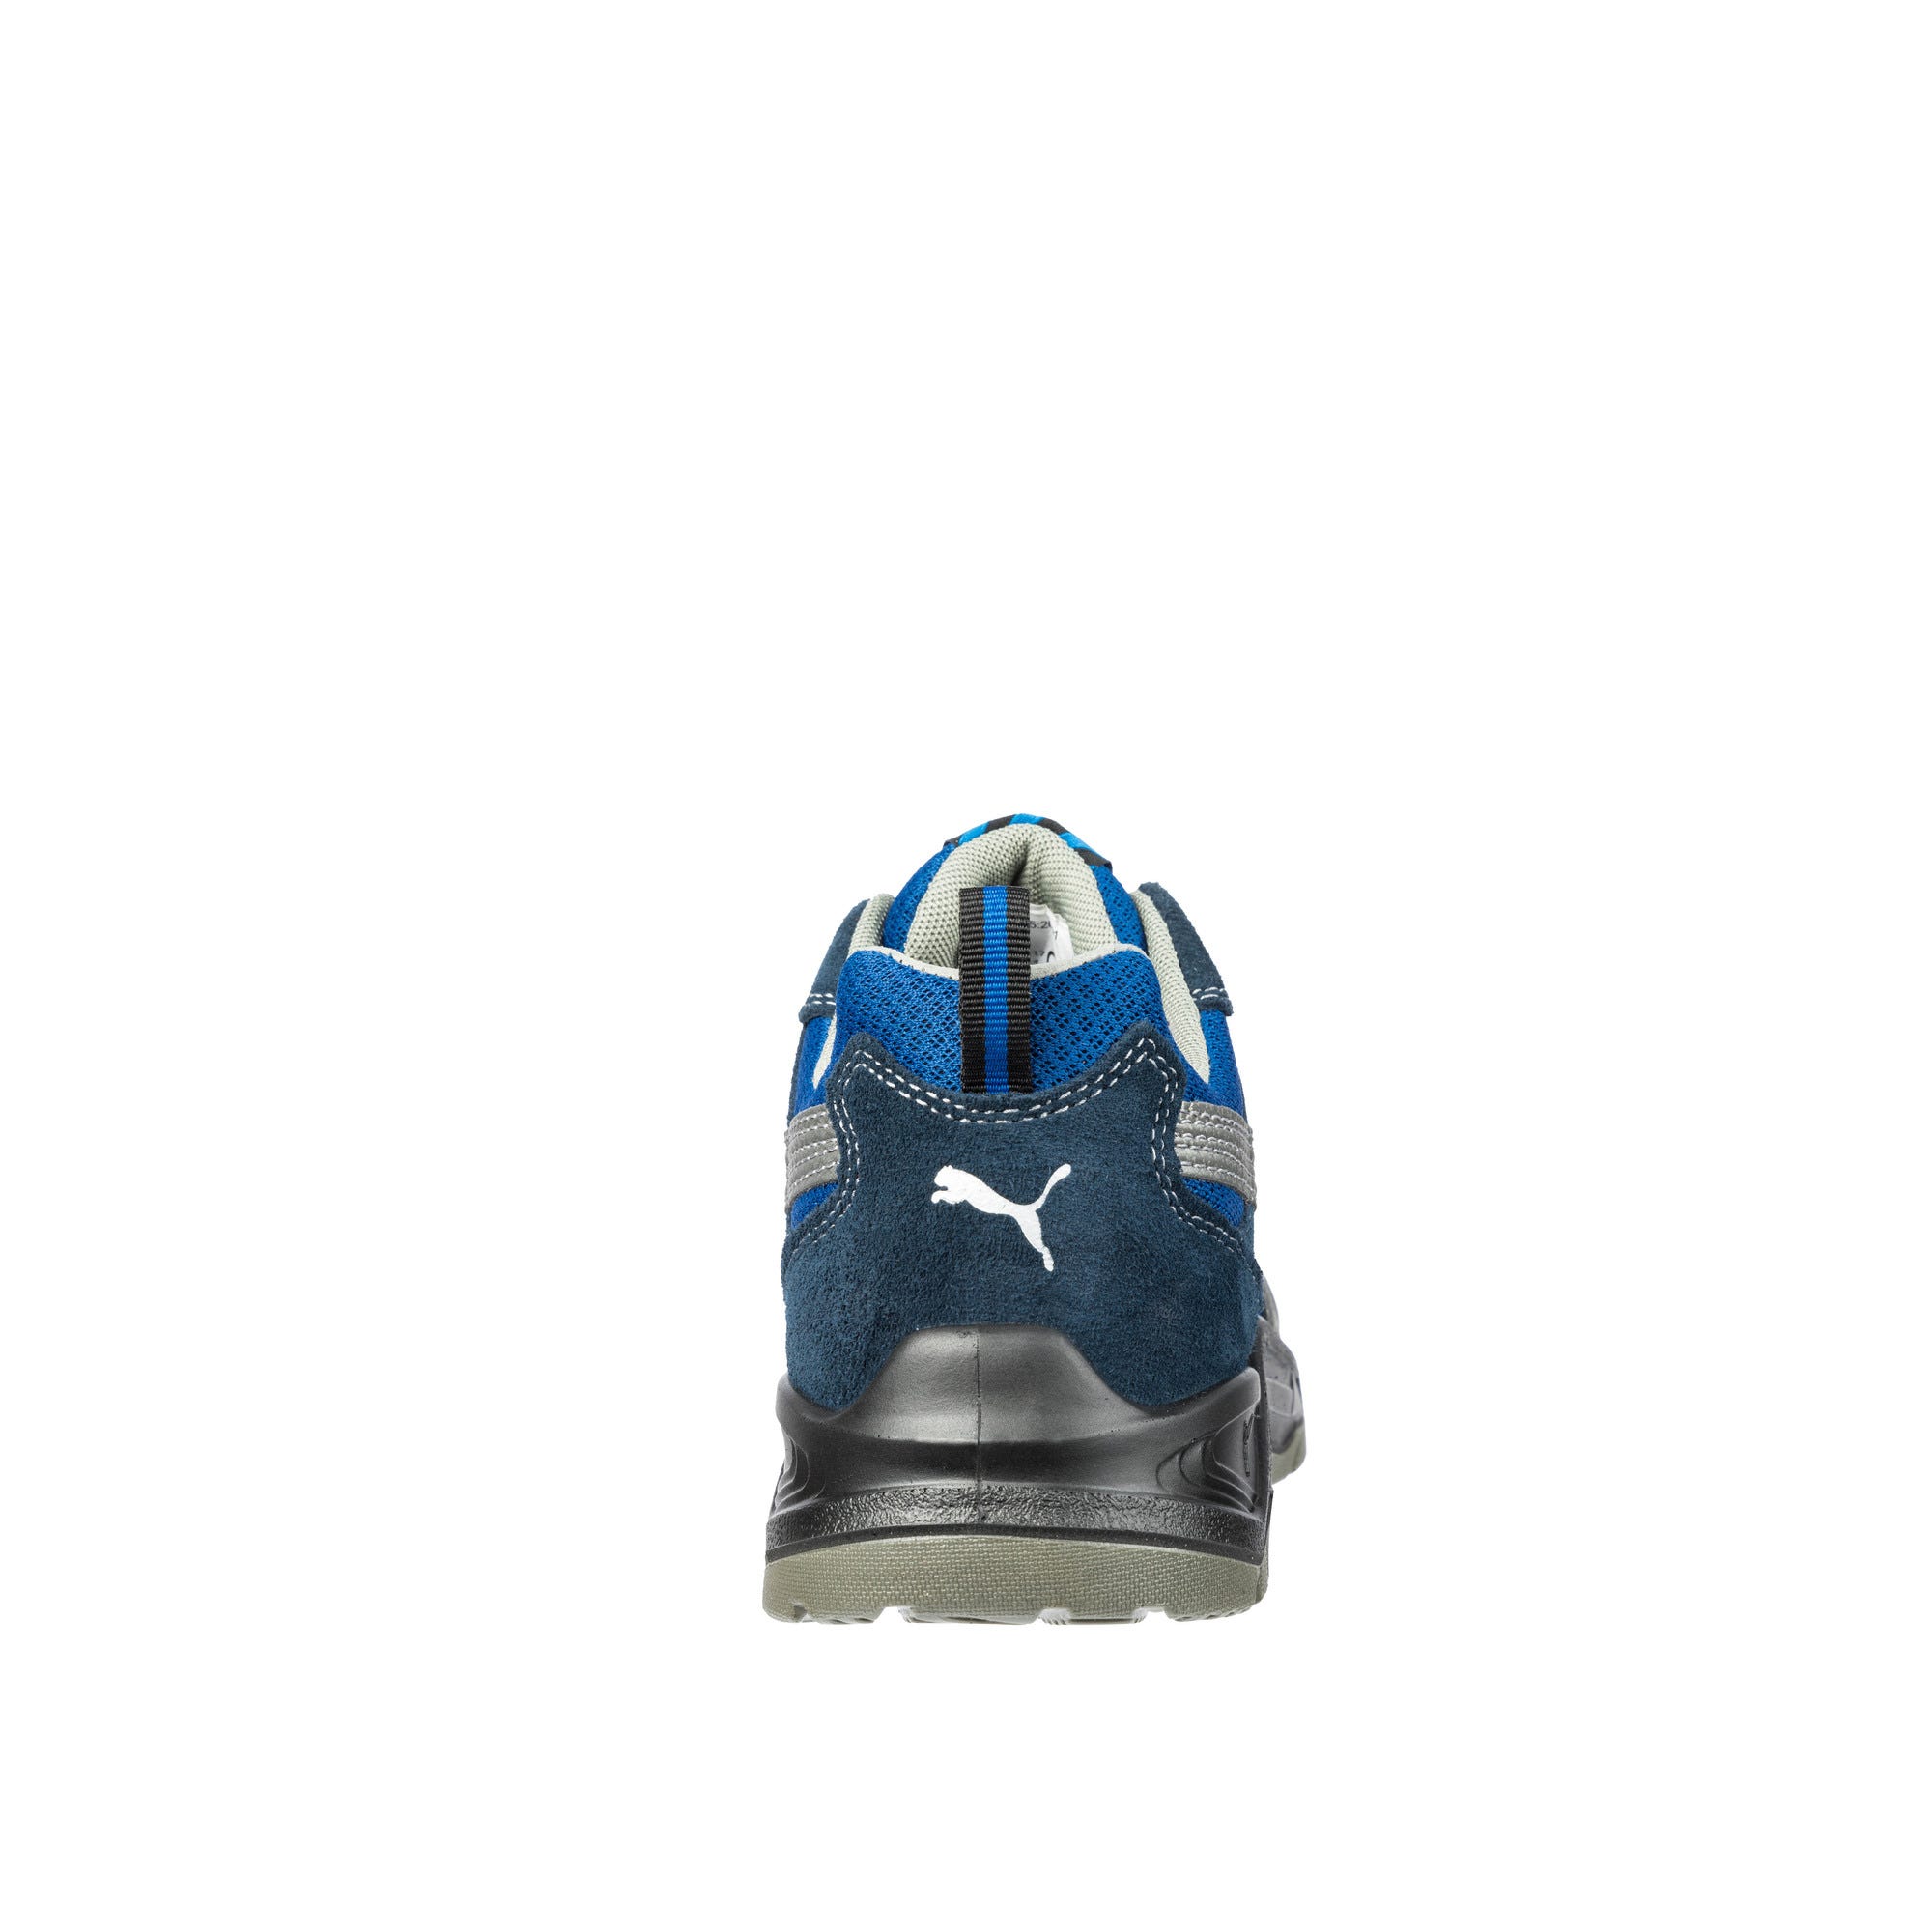 Chaussure Securité PUMA Omni S1P Taille 46 Modèle Bas bleu 643610 0